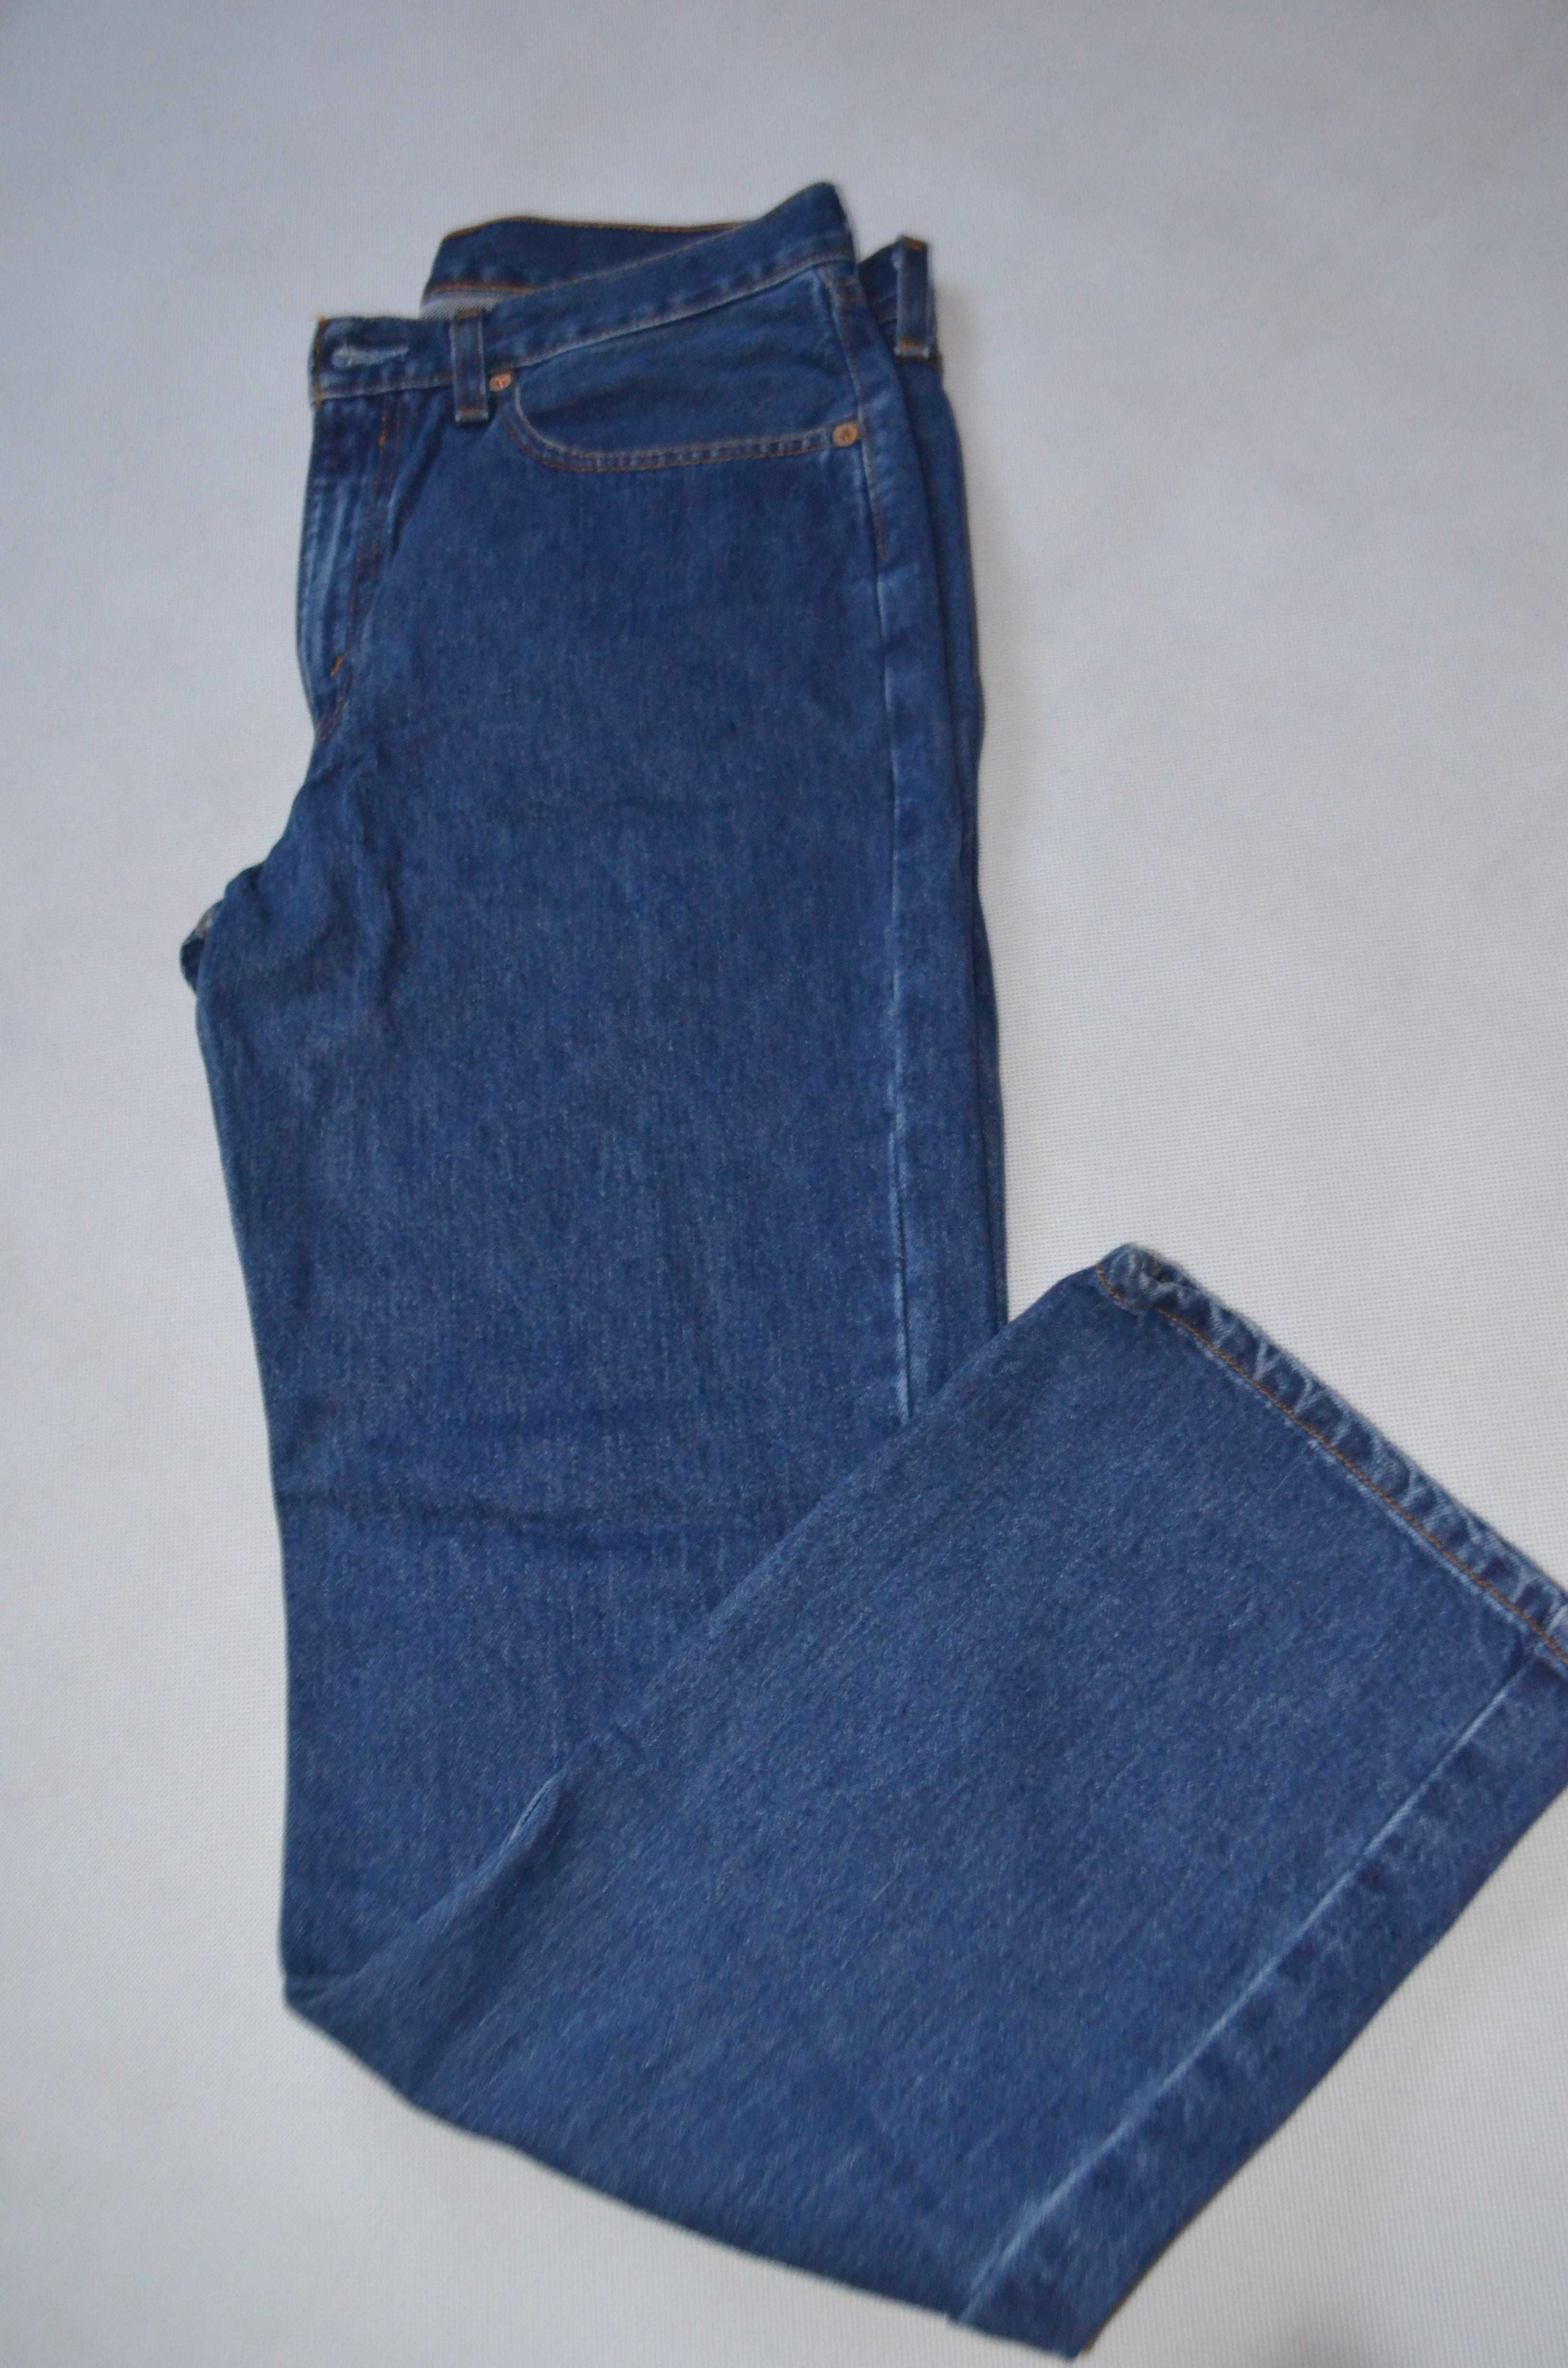 spodnie jeans Levis model 751 rozmiar M W30 L32